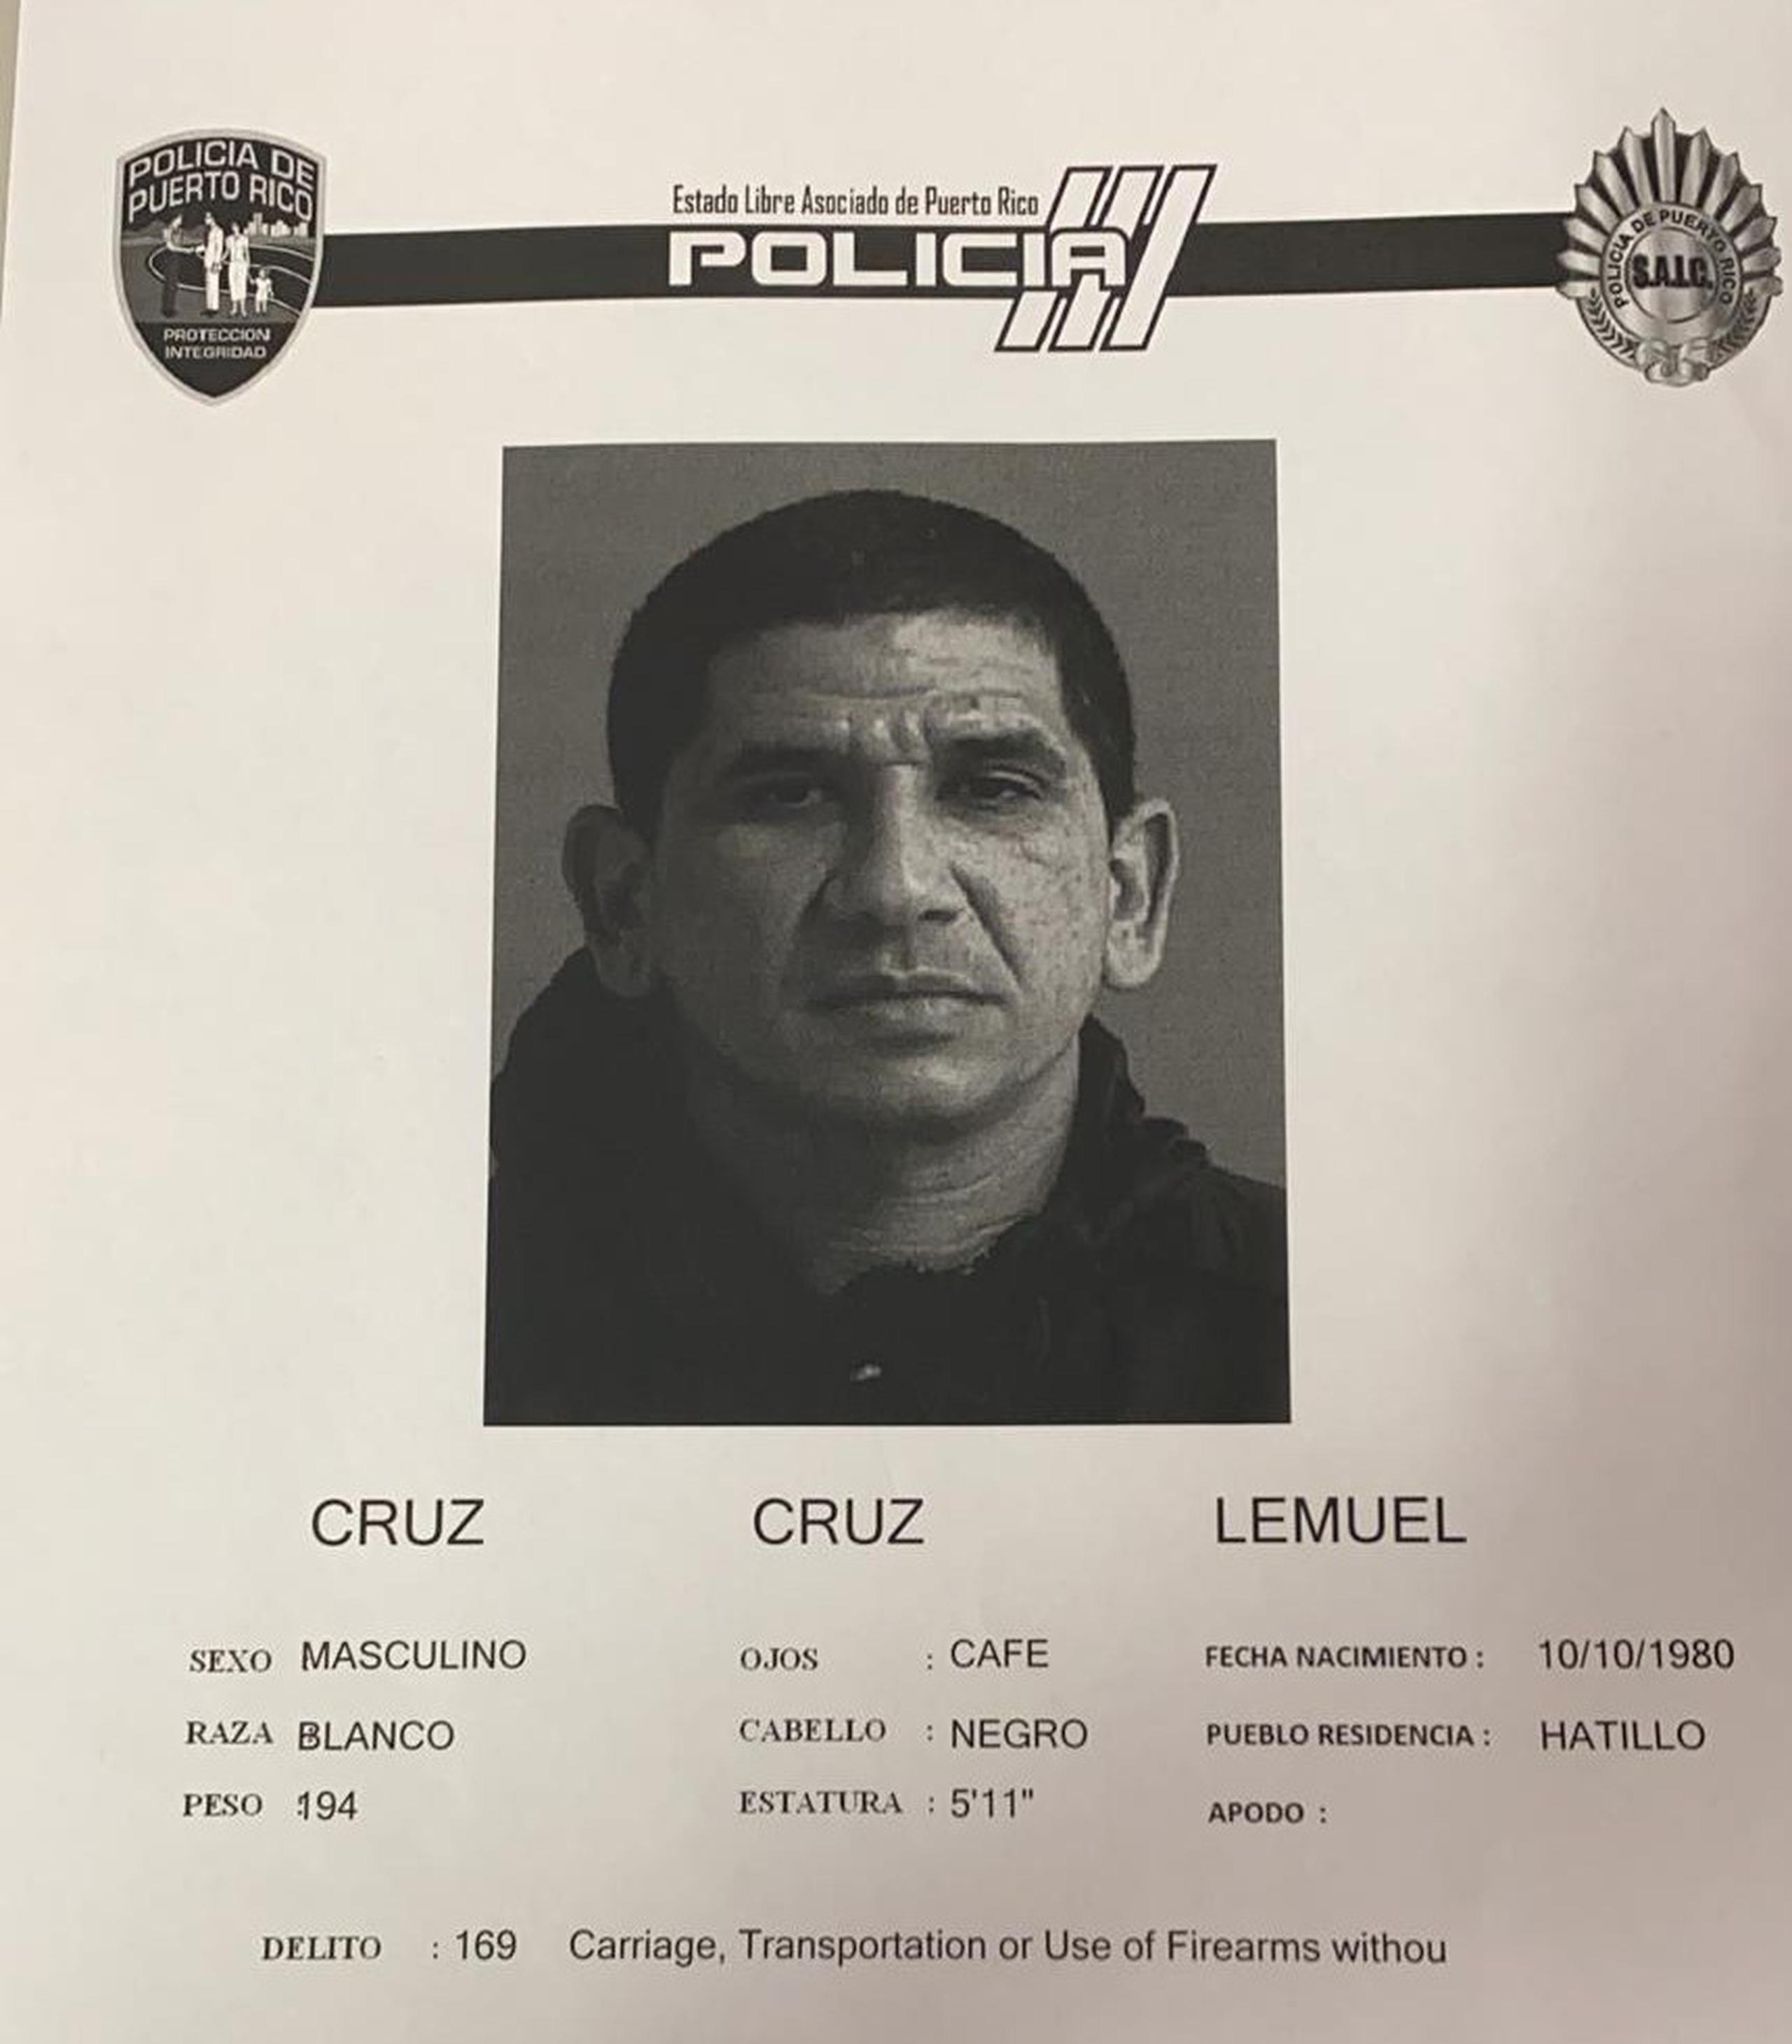 Lemuel Cruz Cruz, de 39 años, acusado en ausencia por el asesinato de una mujer el 24 de junio en Arecibo se entregó a las autoridades. Nuevos cargos por violencia de género y maltrato de menores fueron le fueron radicados.